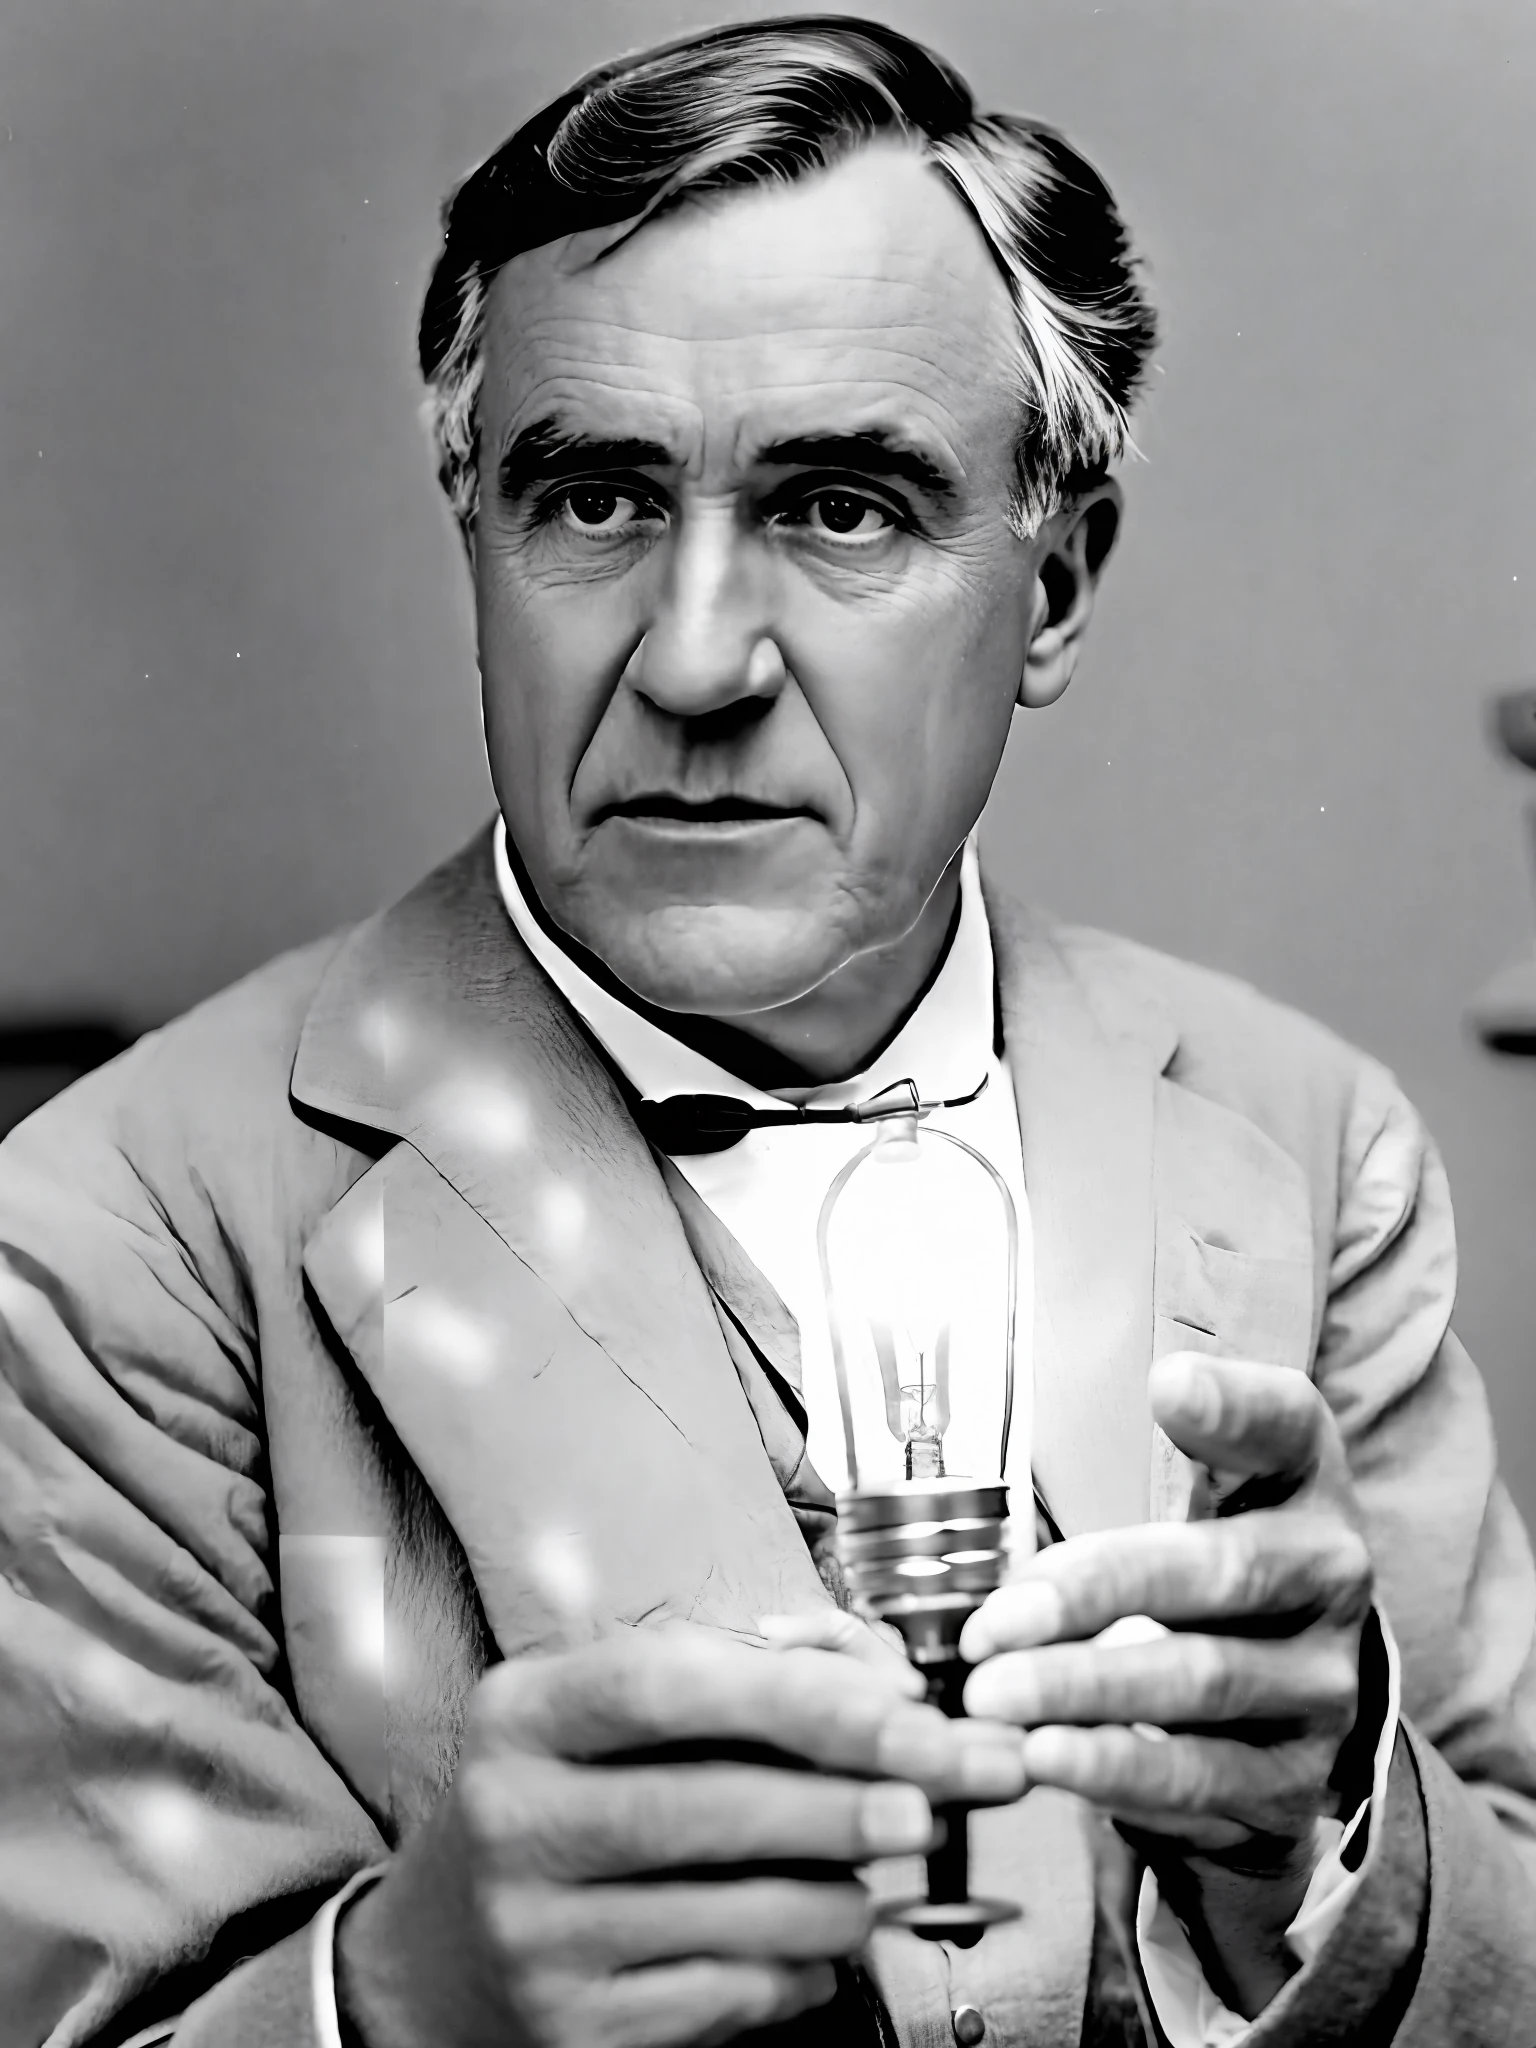 фото Томаса Эдисона, держа в руке зажженную лампу, смотрю в камеру, Портрет, в исследовательской лаборатории, ультра реалистичный, чрезвычайно подробный